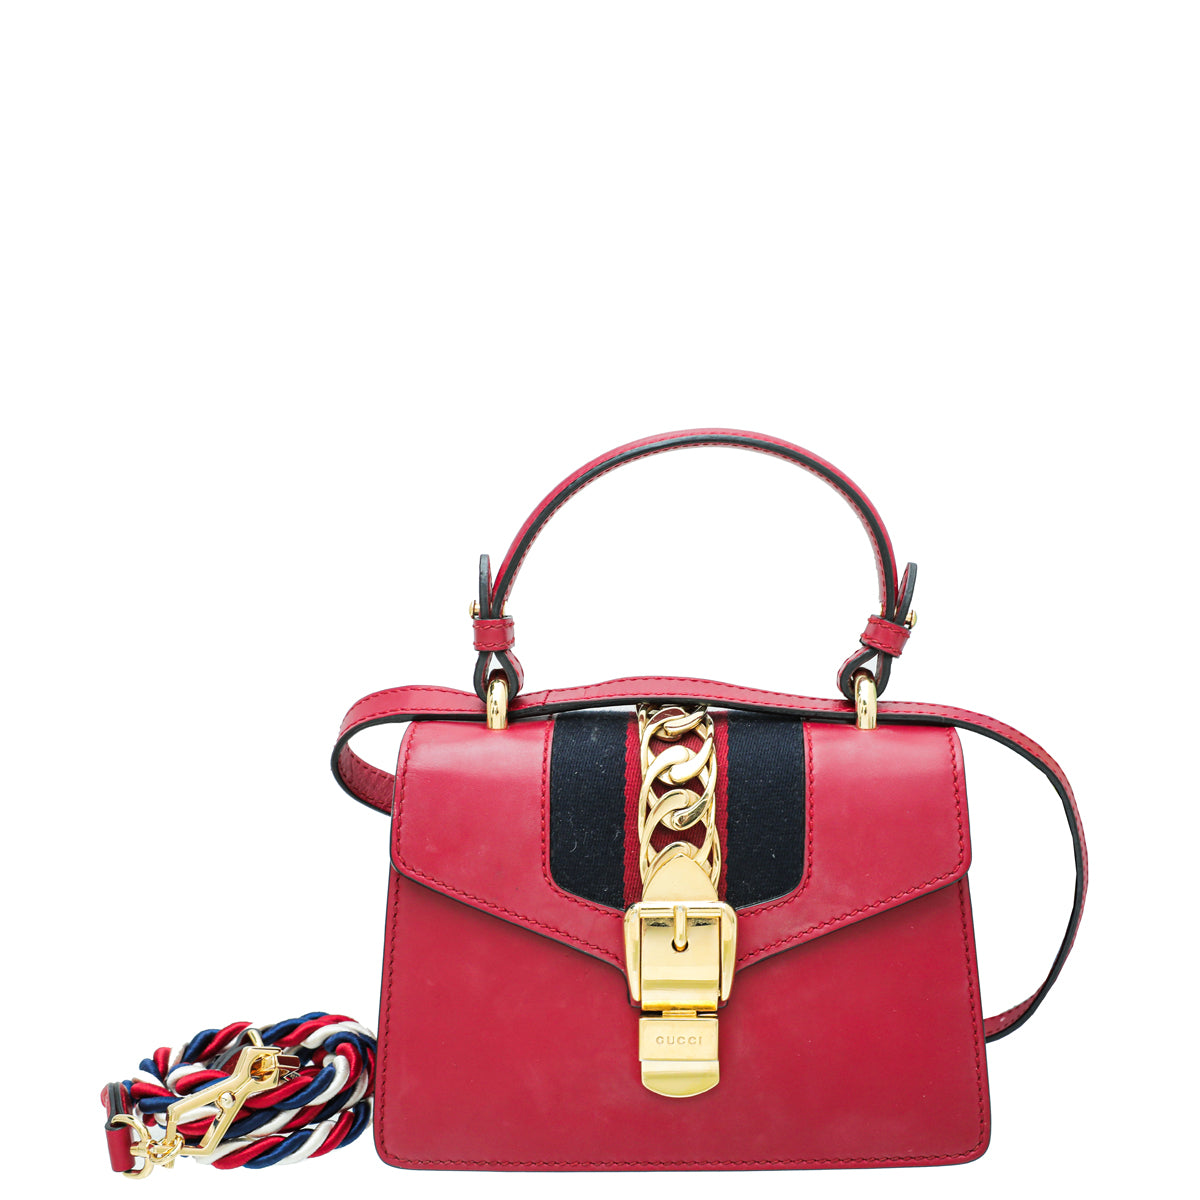 Túi Gucci SYLVIE SMALL RED SHOULDER BAG - Tín đồ hàng hiệu